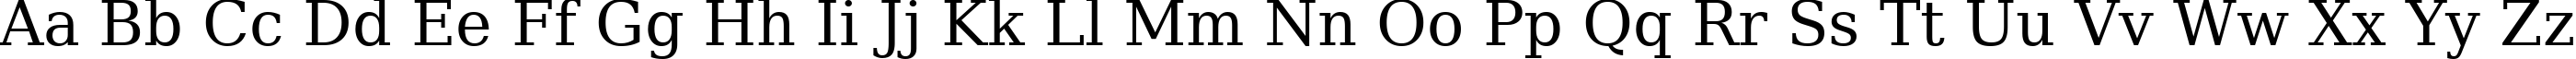 Пример написания английского алфавита шрифтом DejaVu Serif